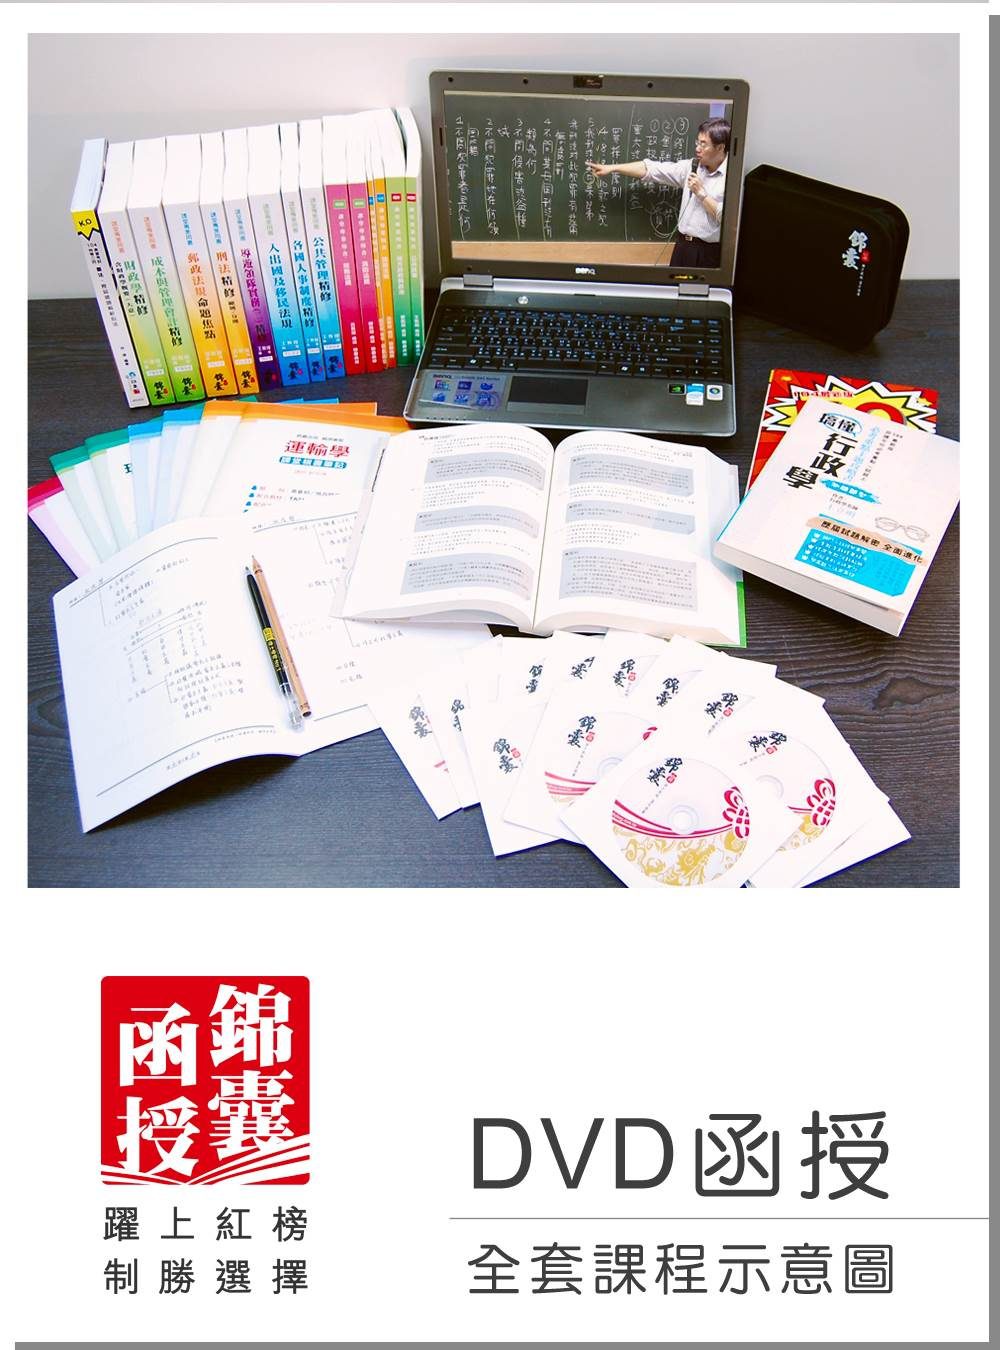 【DVD函授】記帳士證照考試